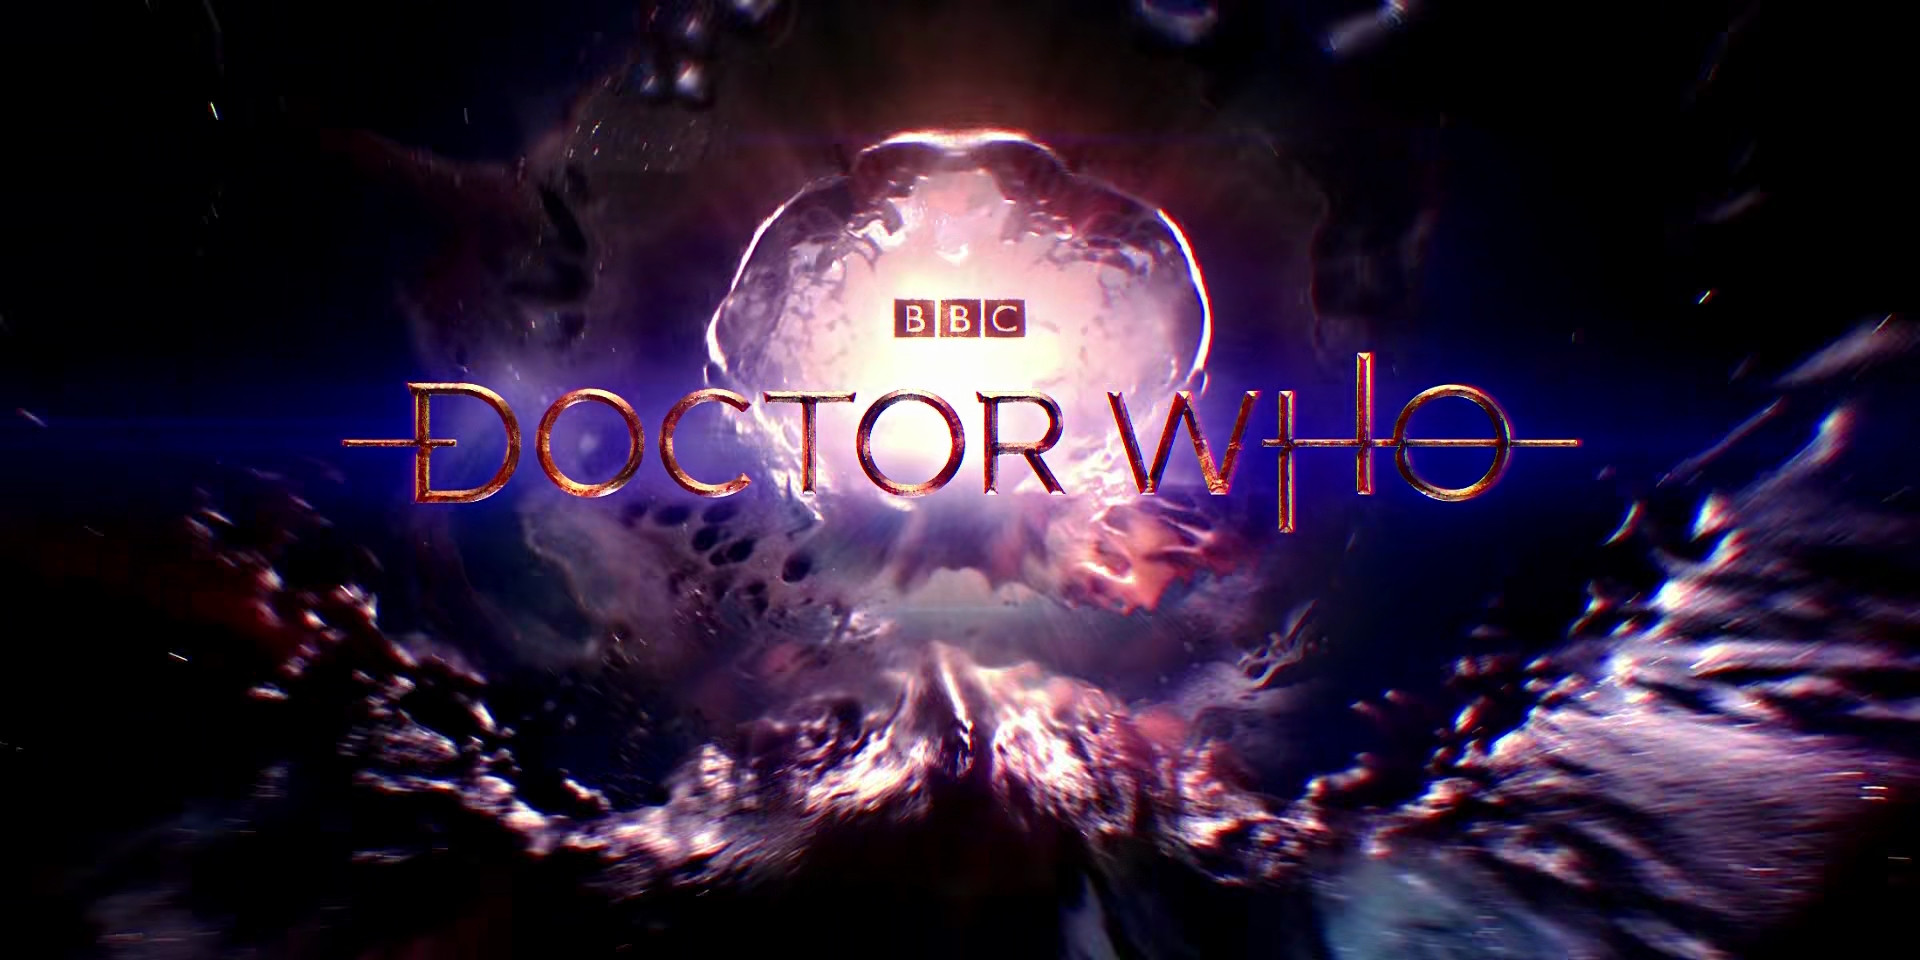 Dr Who Season 12 2005 BBC 1080p BluRay MKV x265 AC3 Web DL 5 2GB